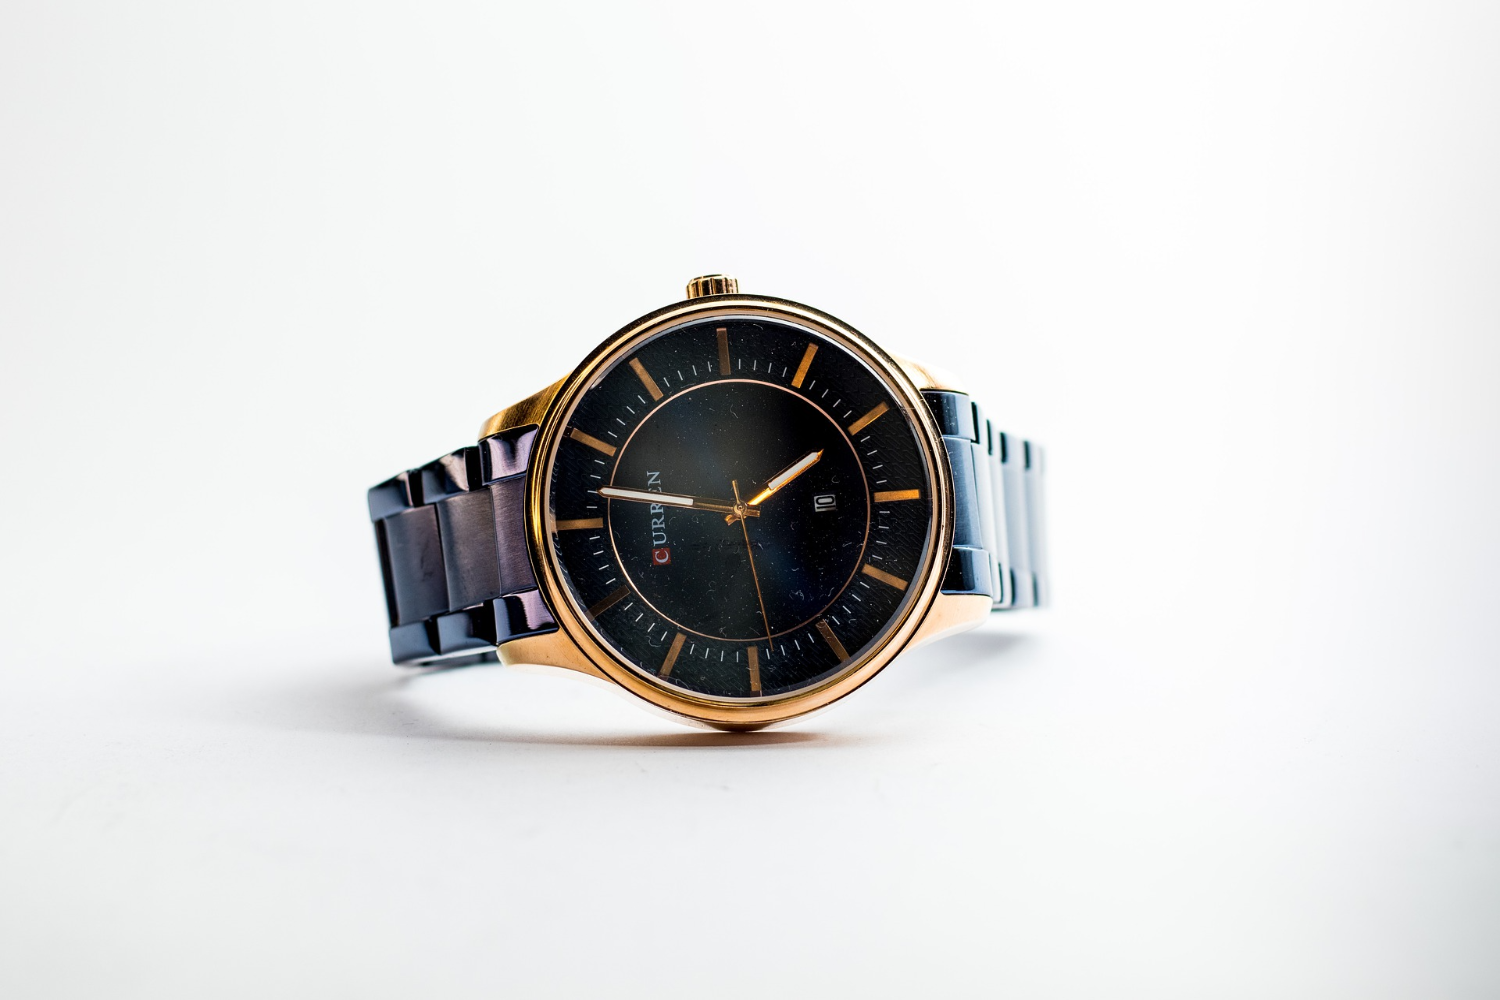 安価で高品質を目指す物づくりの姿勢から誕生したカシオの腕時計